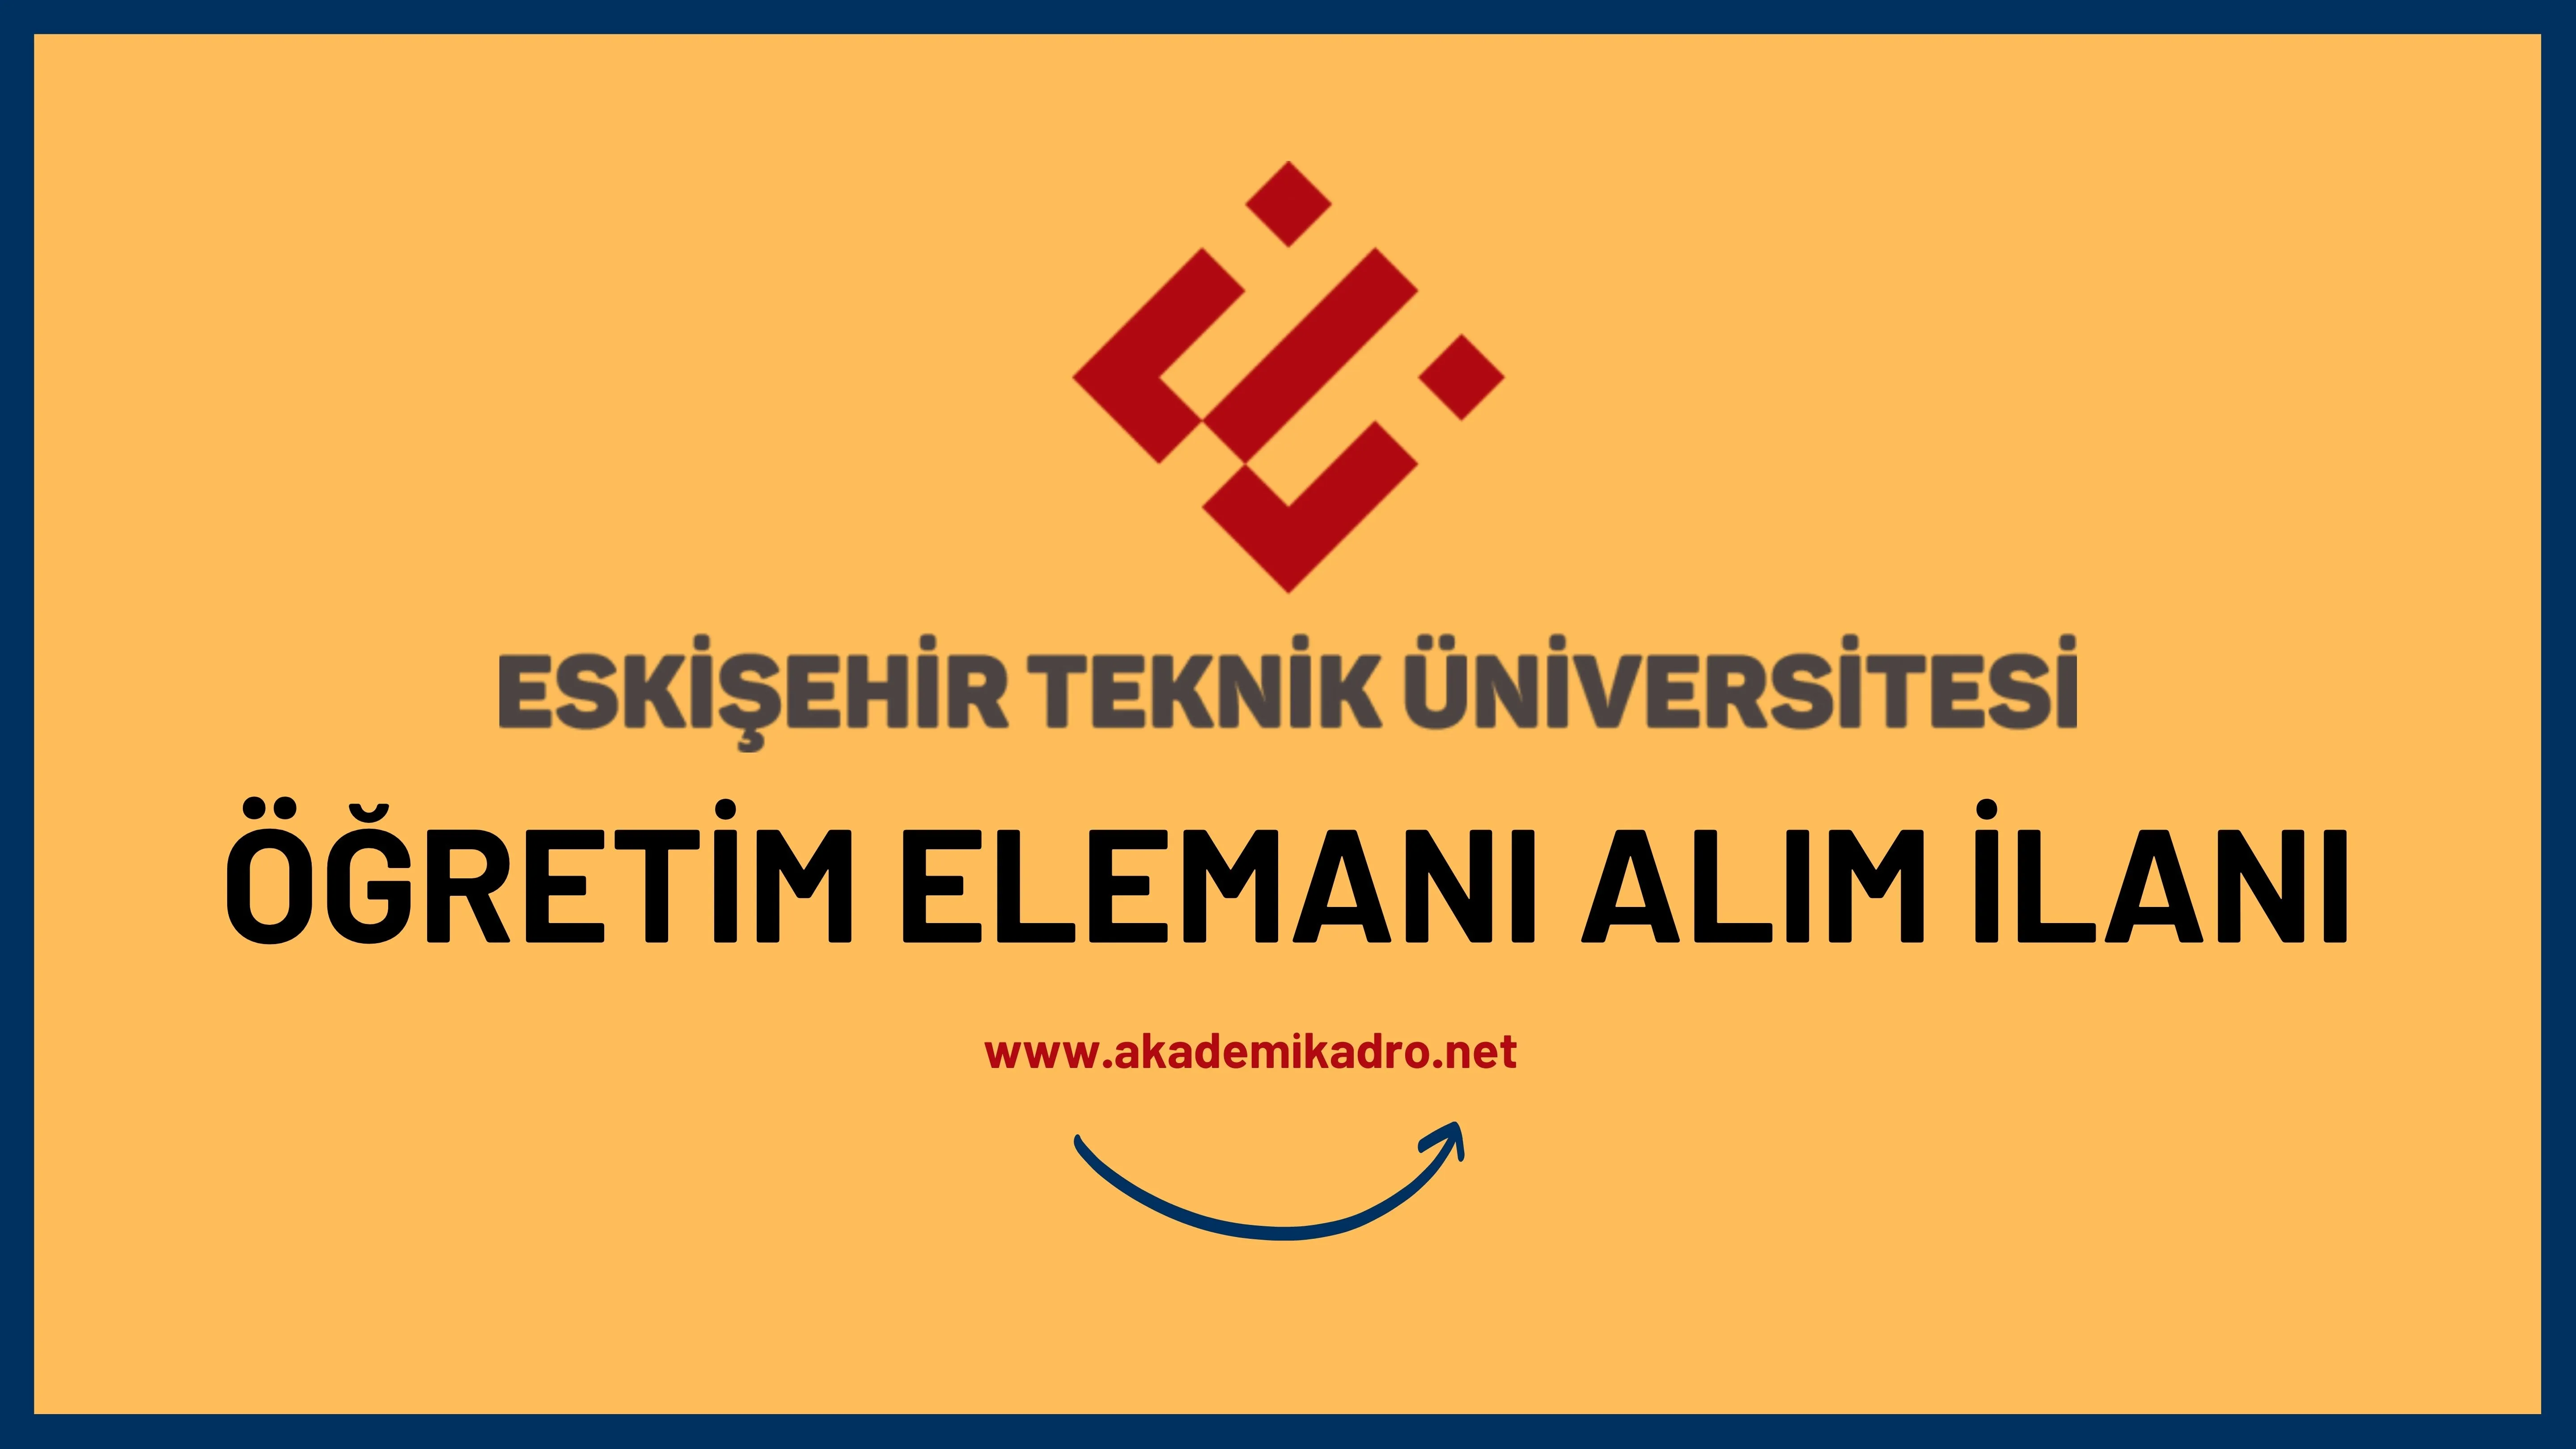 Eskişehir Teknik Üniversitesi 9 Öğretim üyesi ve 3 Araştırma görevlisi alacak. Son başvuru tarihi 22 Eylül 2022